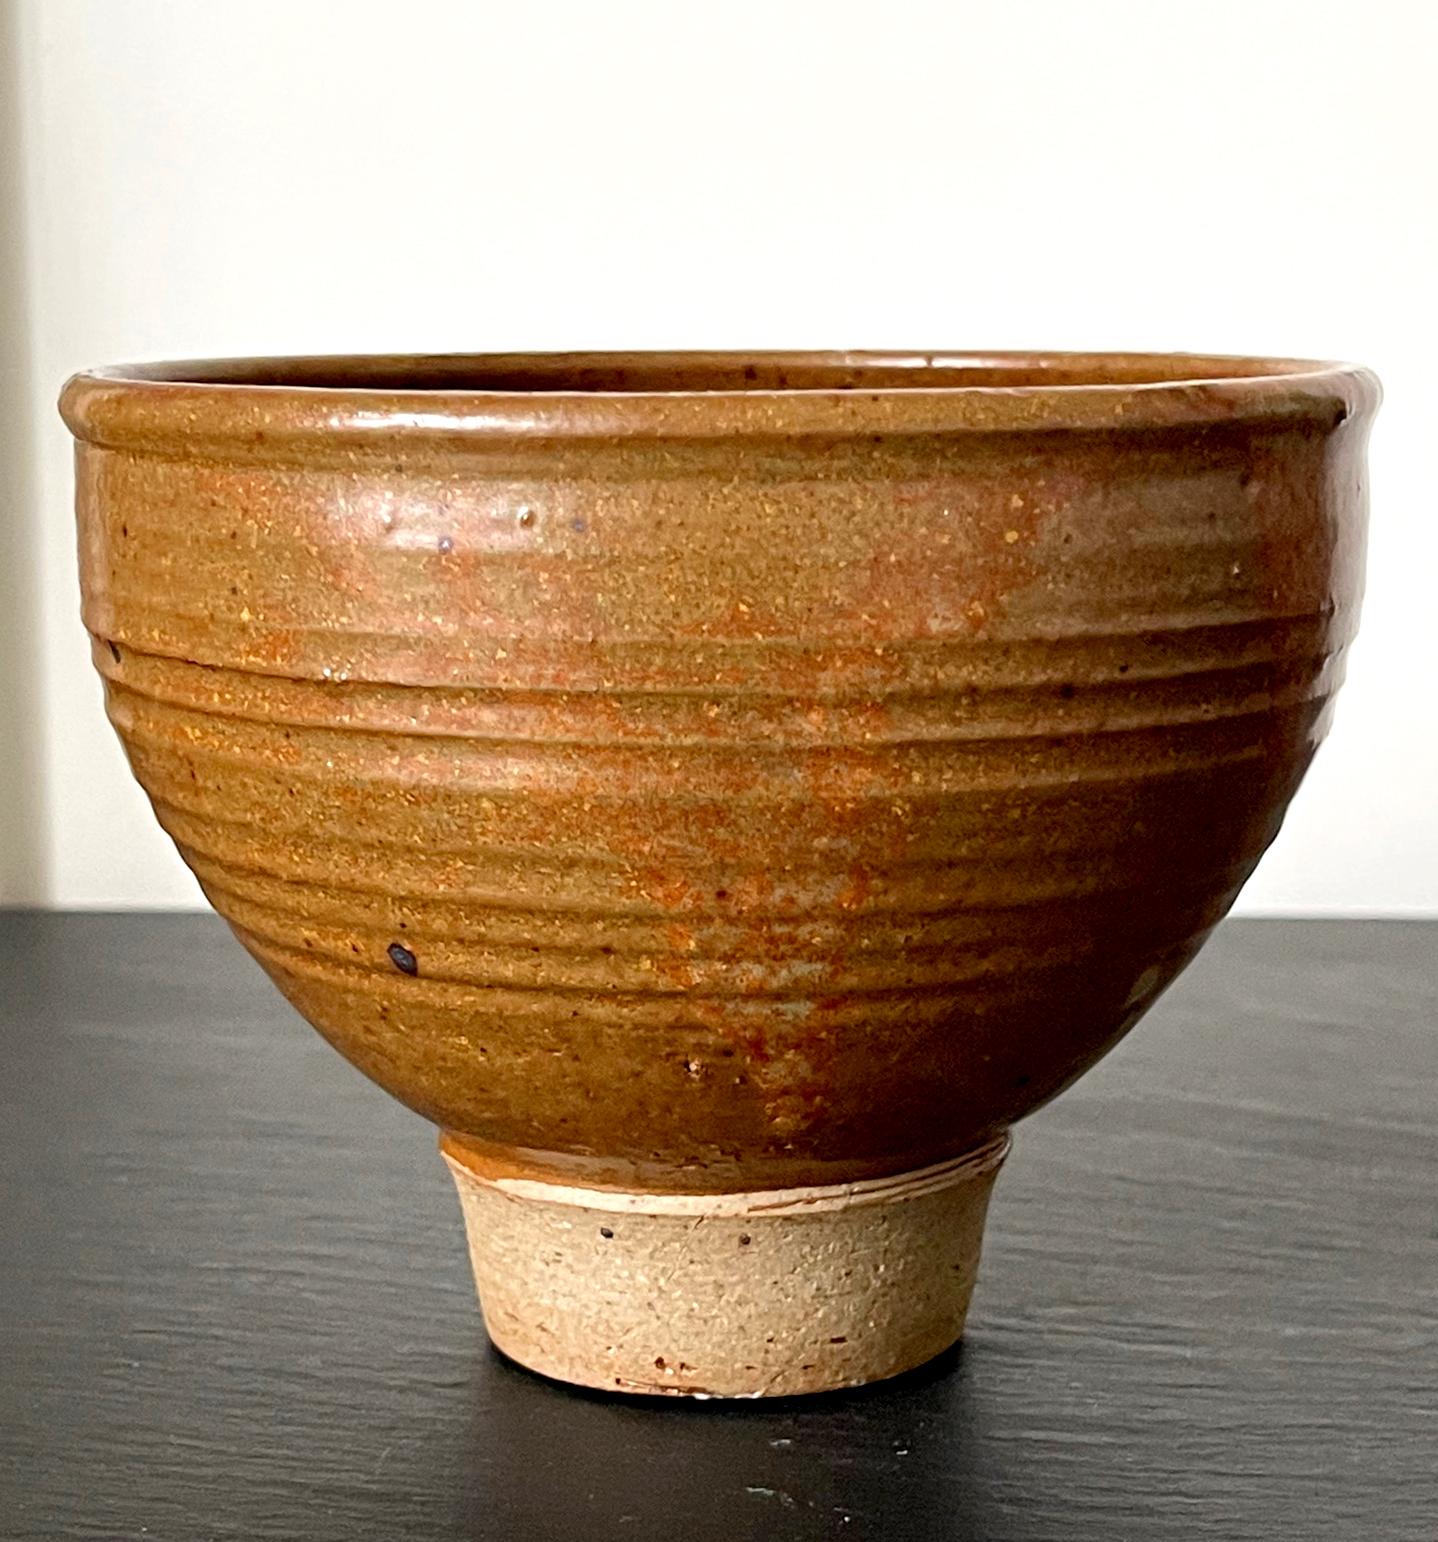 American Glazed Ceramic Tea Bowl by Toshiko Takaezu